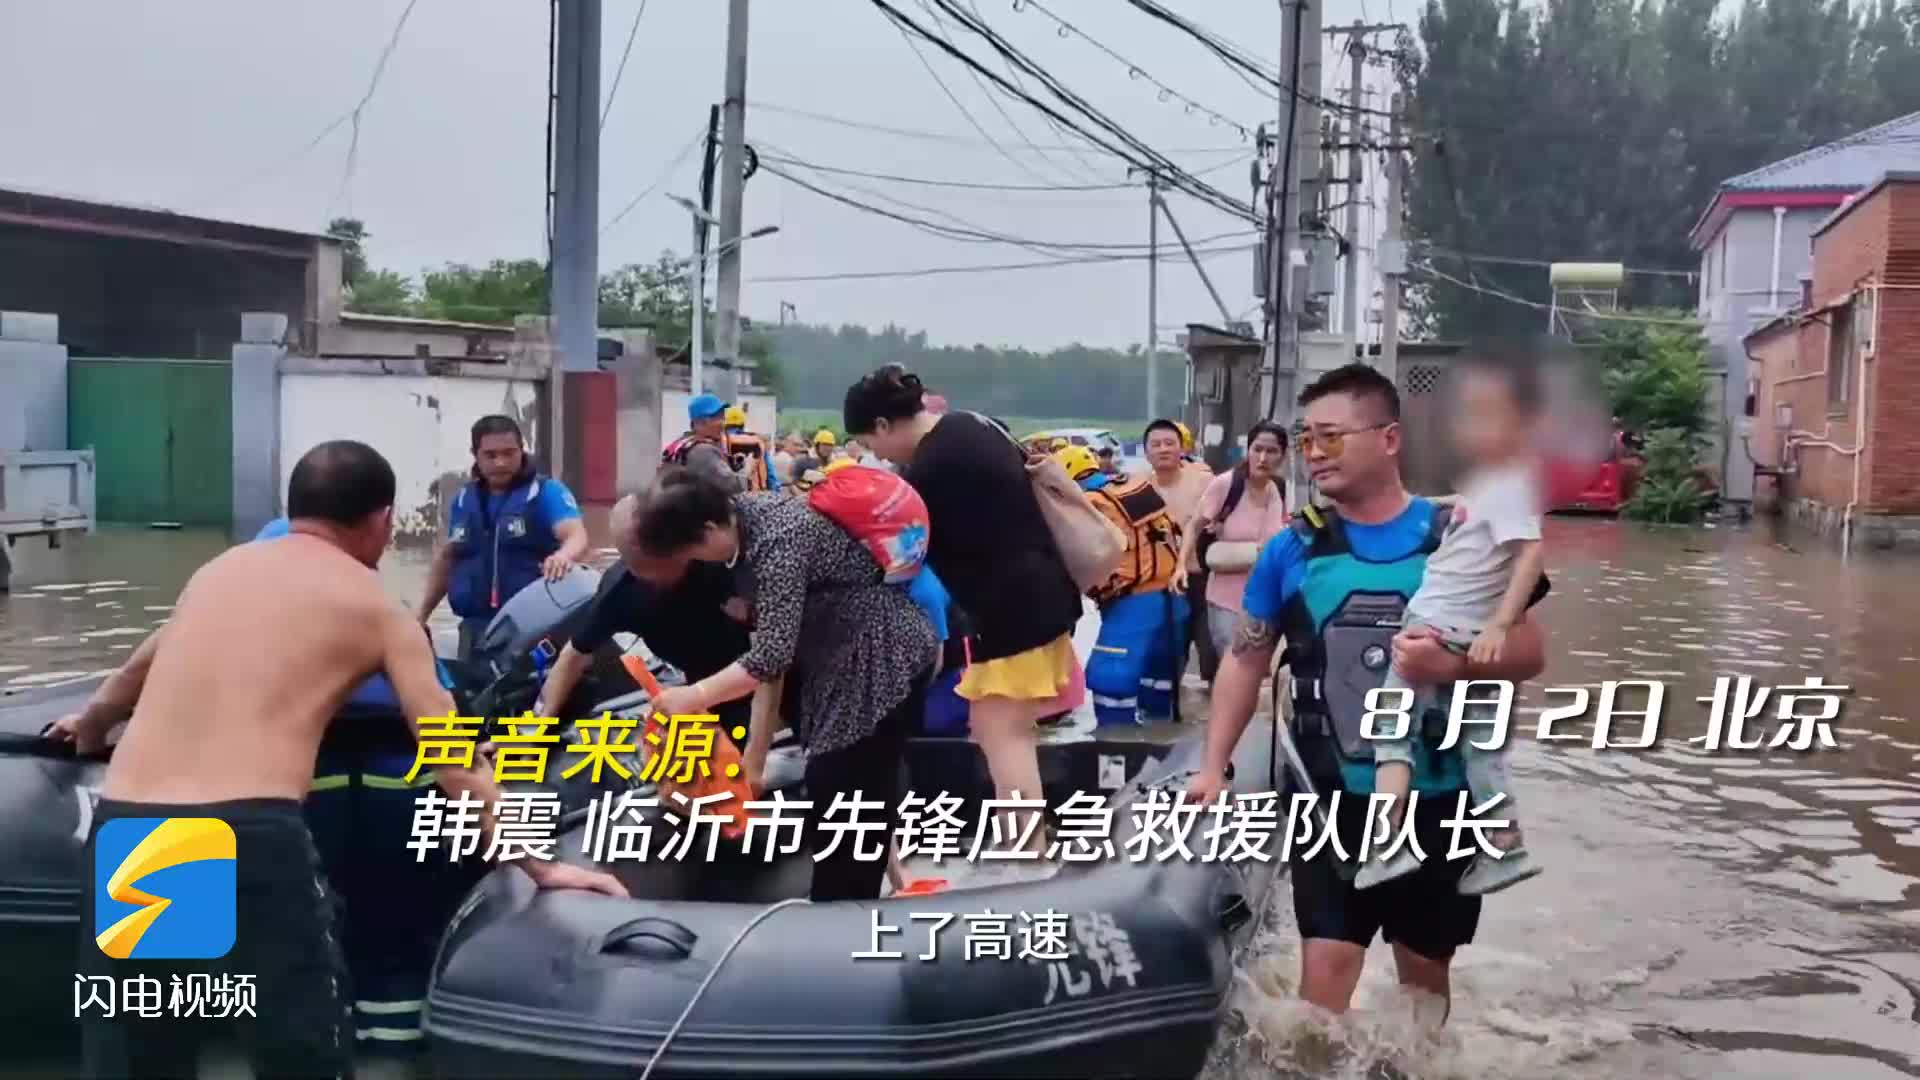 临沂市应急先锋救援队转移群众1300余人 完成北京救援工作后驰援河北